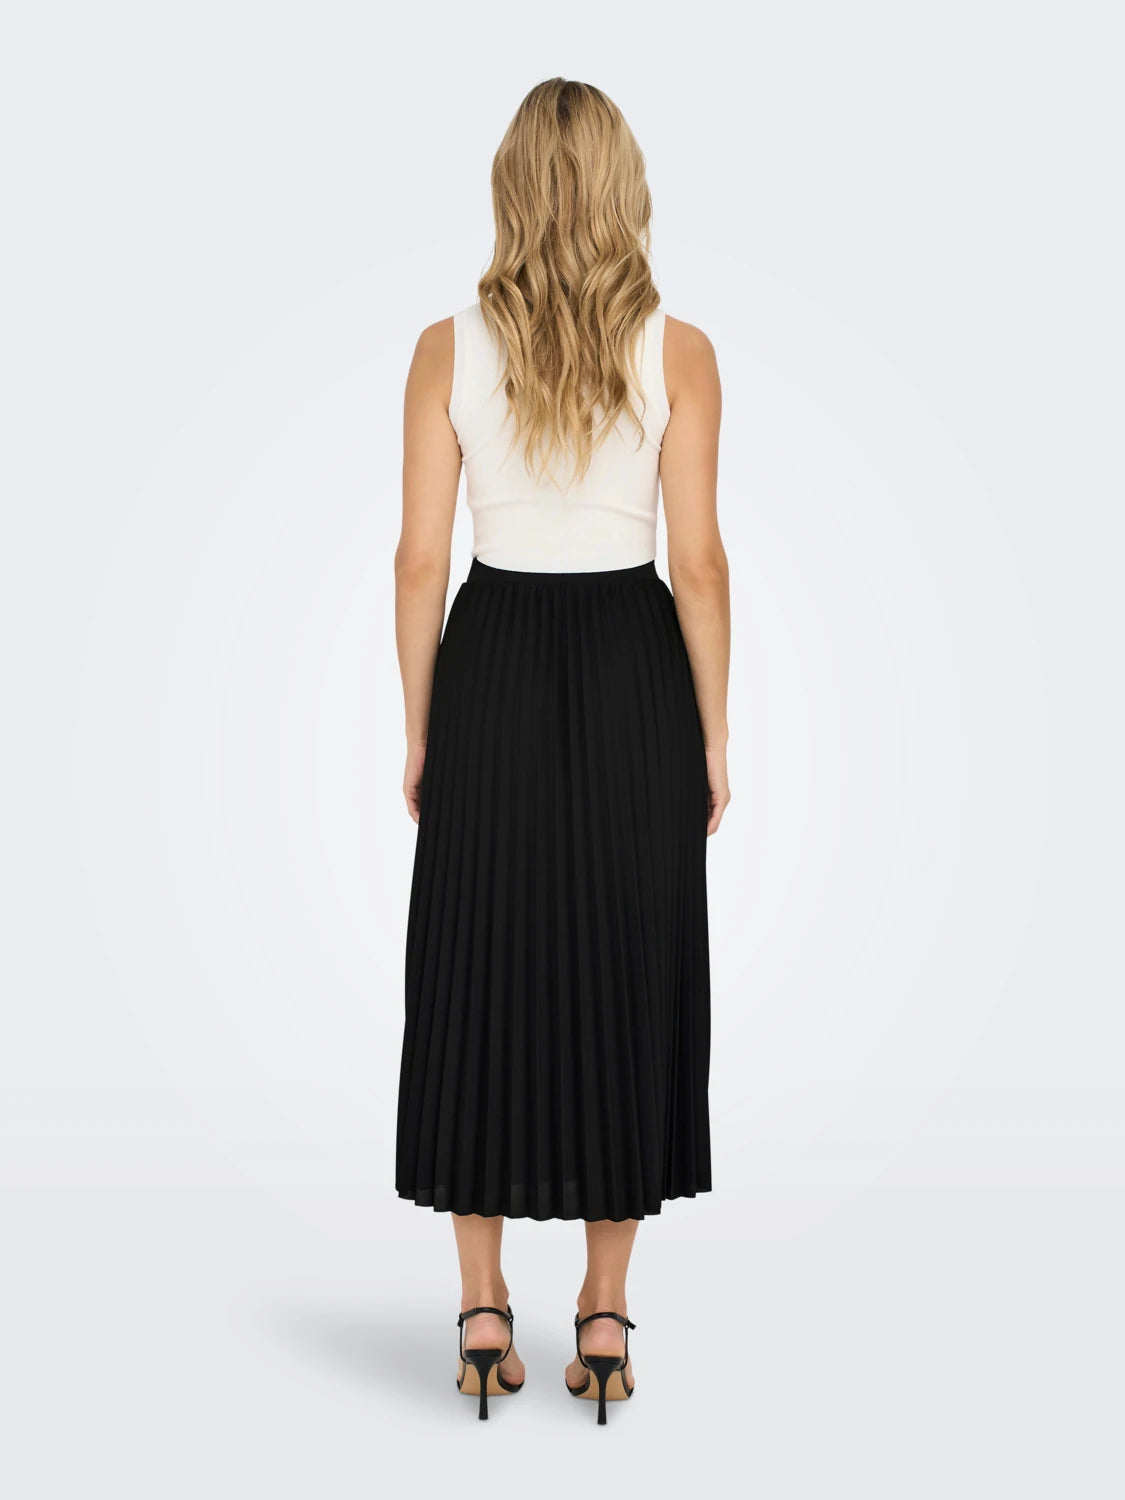 New Melisa Plisse Skirt